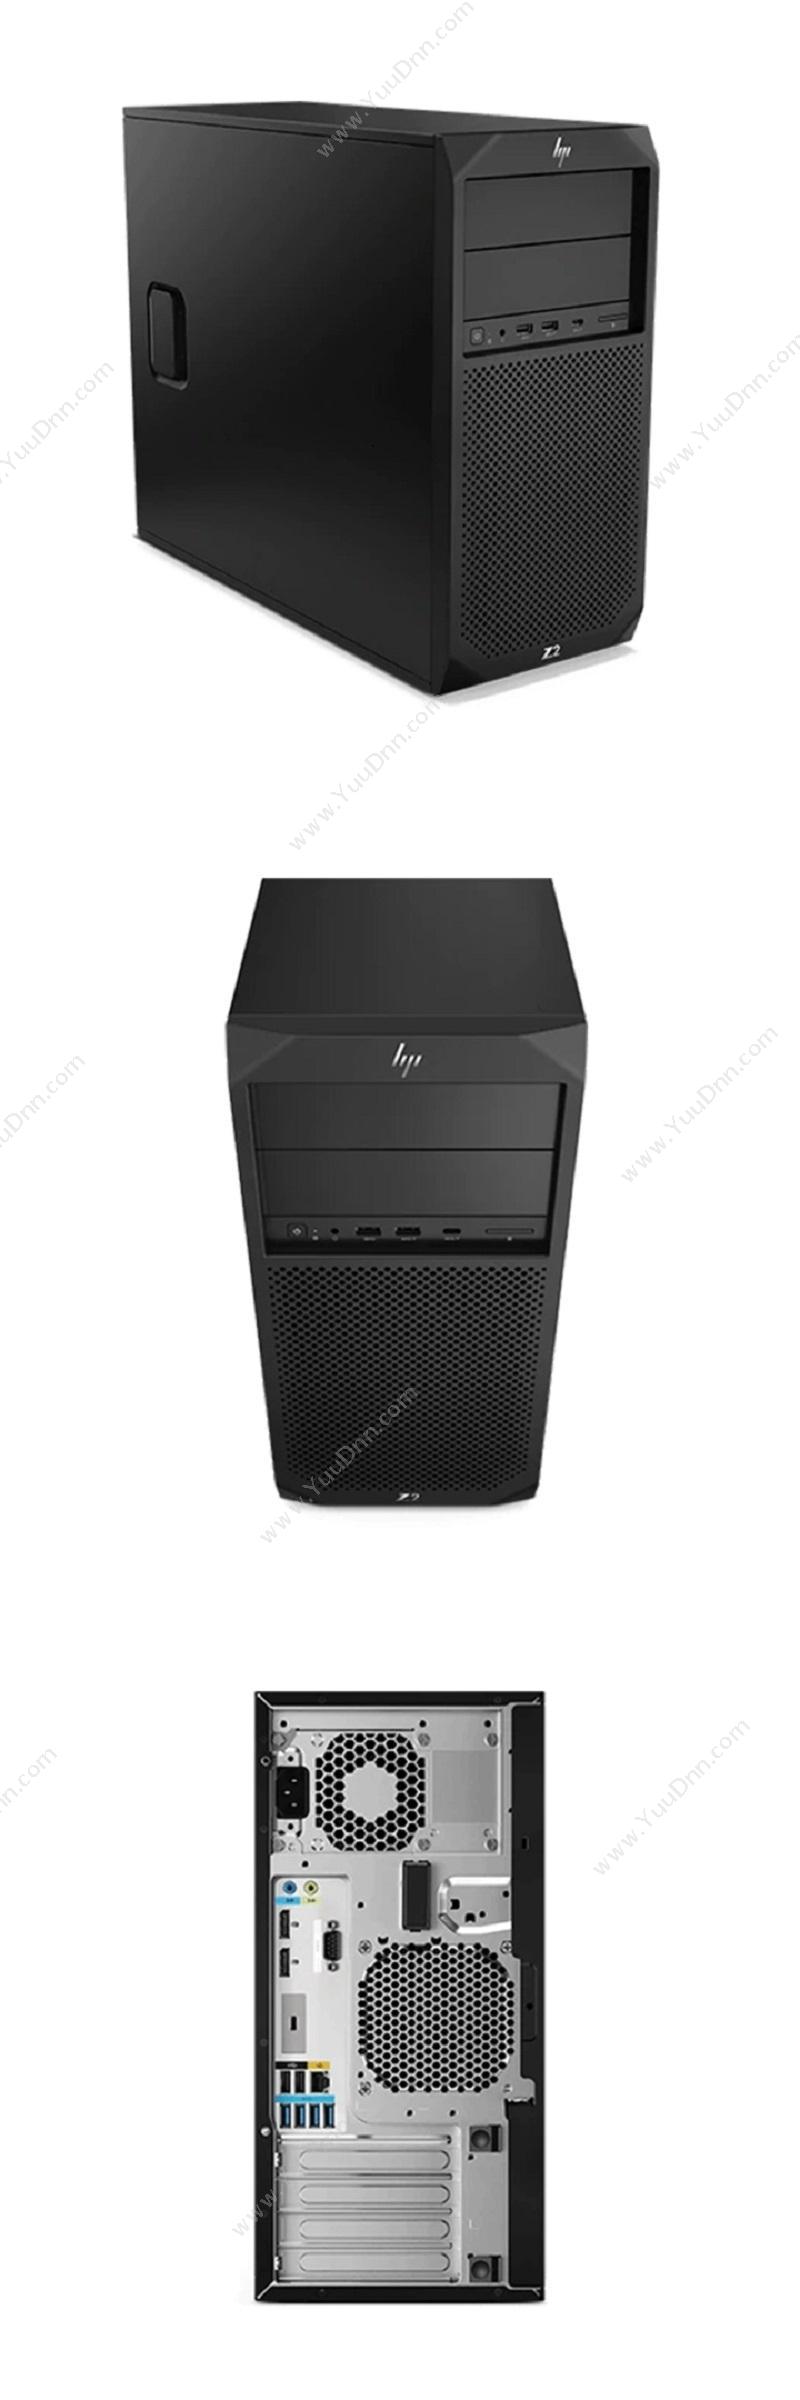 惠普 HP Z2 G4 Workstation 工作站（Intel Xeon E-2176G/32G/256GB+4TB/P4000 8G独显/DVDRW/五年上门服务） 台式工作站